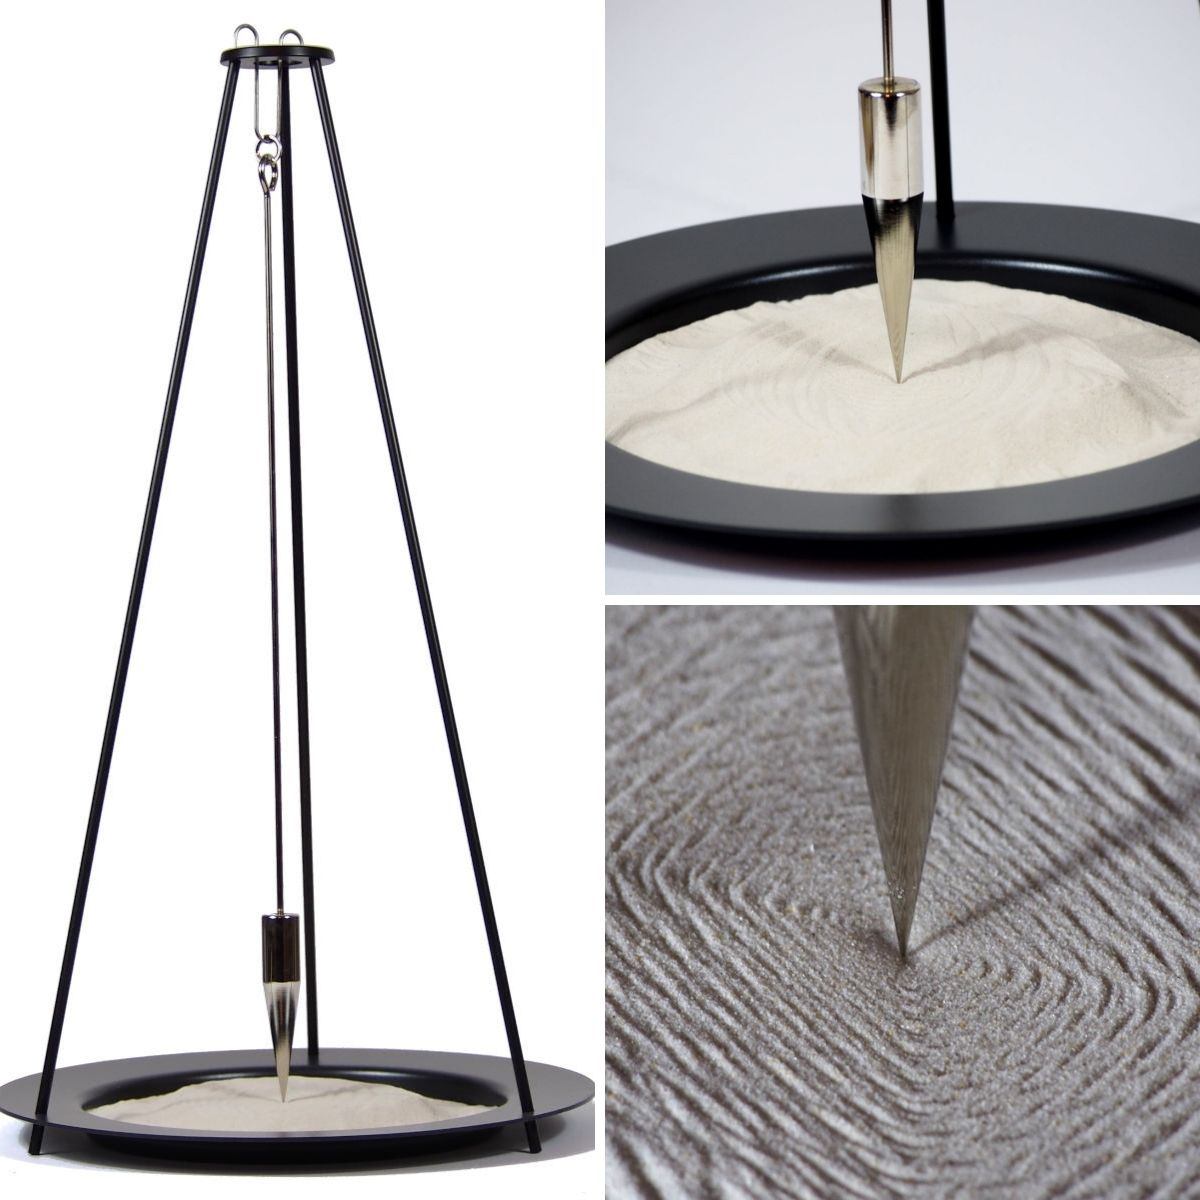 Large Sand Pendulum with Wooden Base